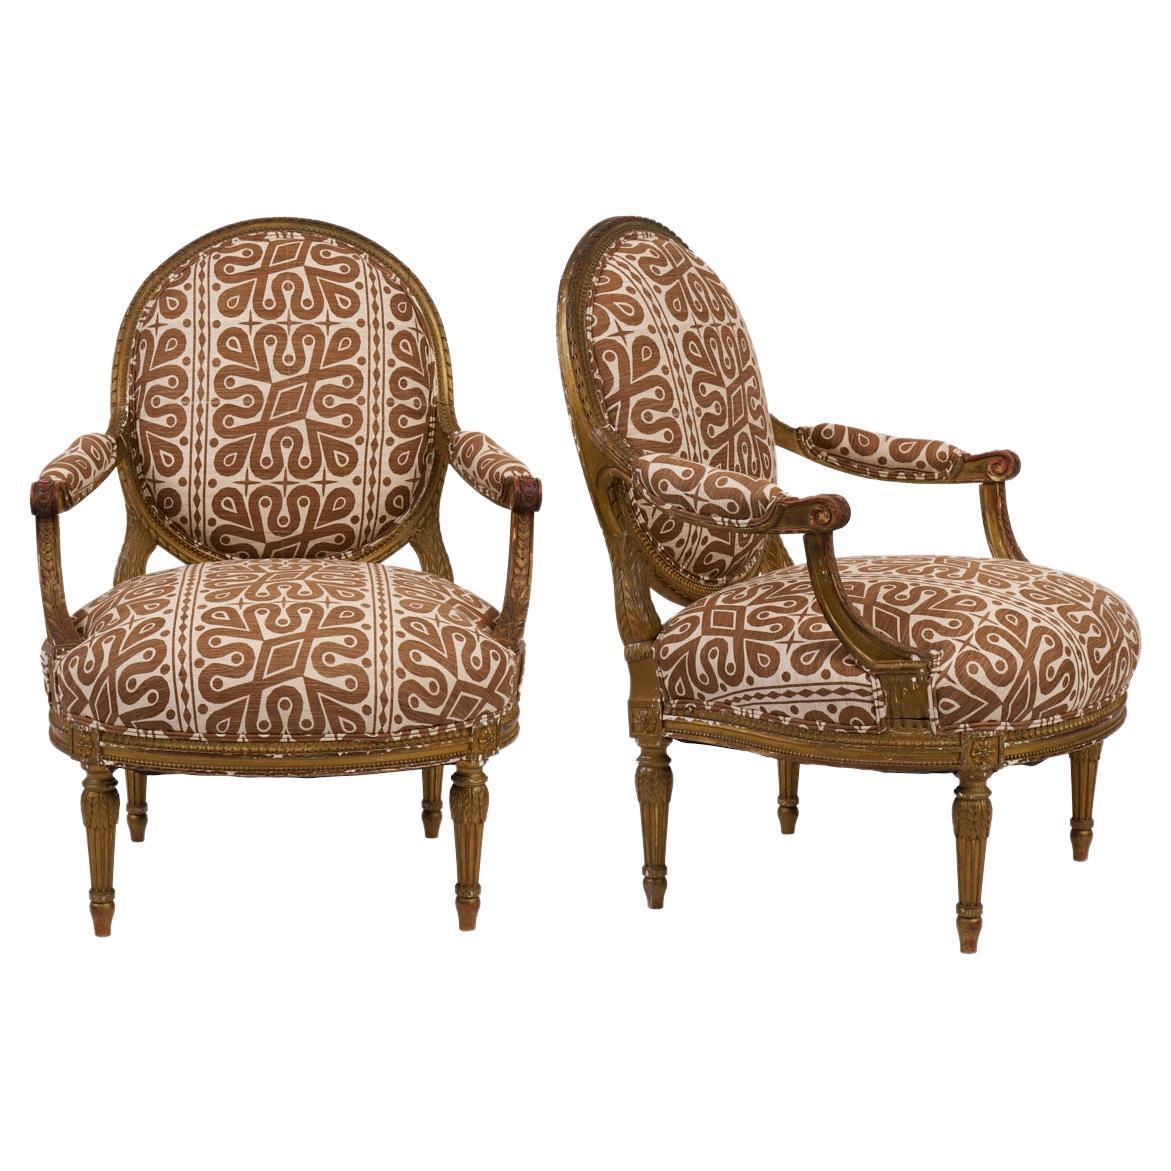 Paar Fauteuils-Stühle des 19. Jahrhunderts, neu gepolstert mit Schumacher-Stoff